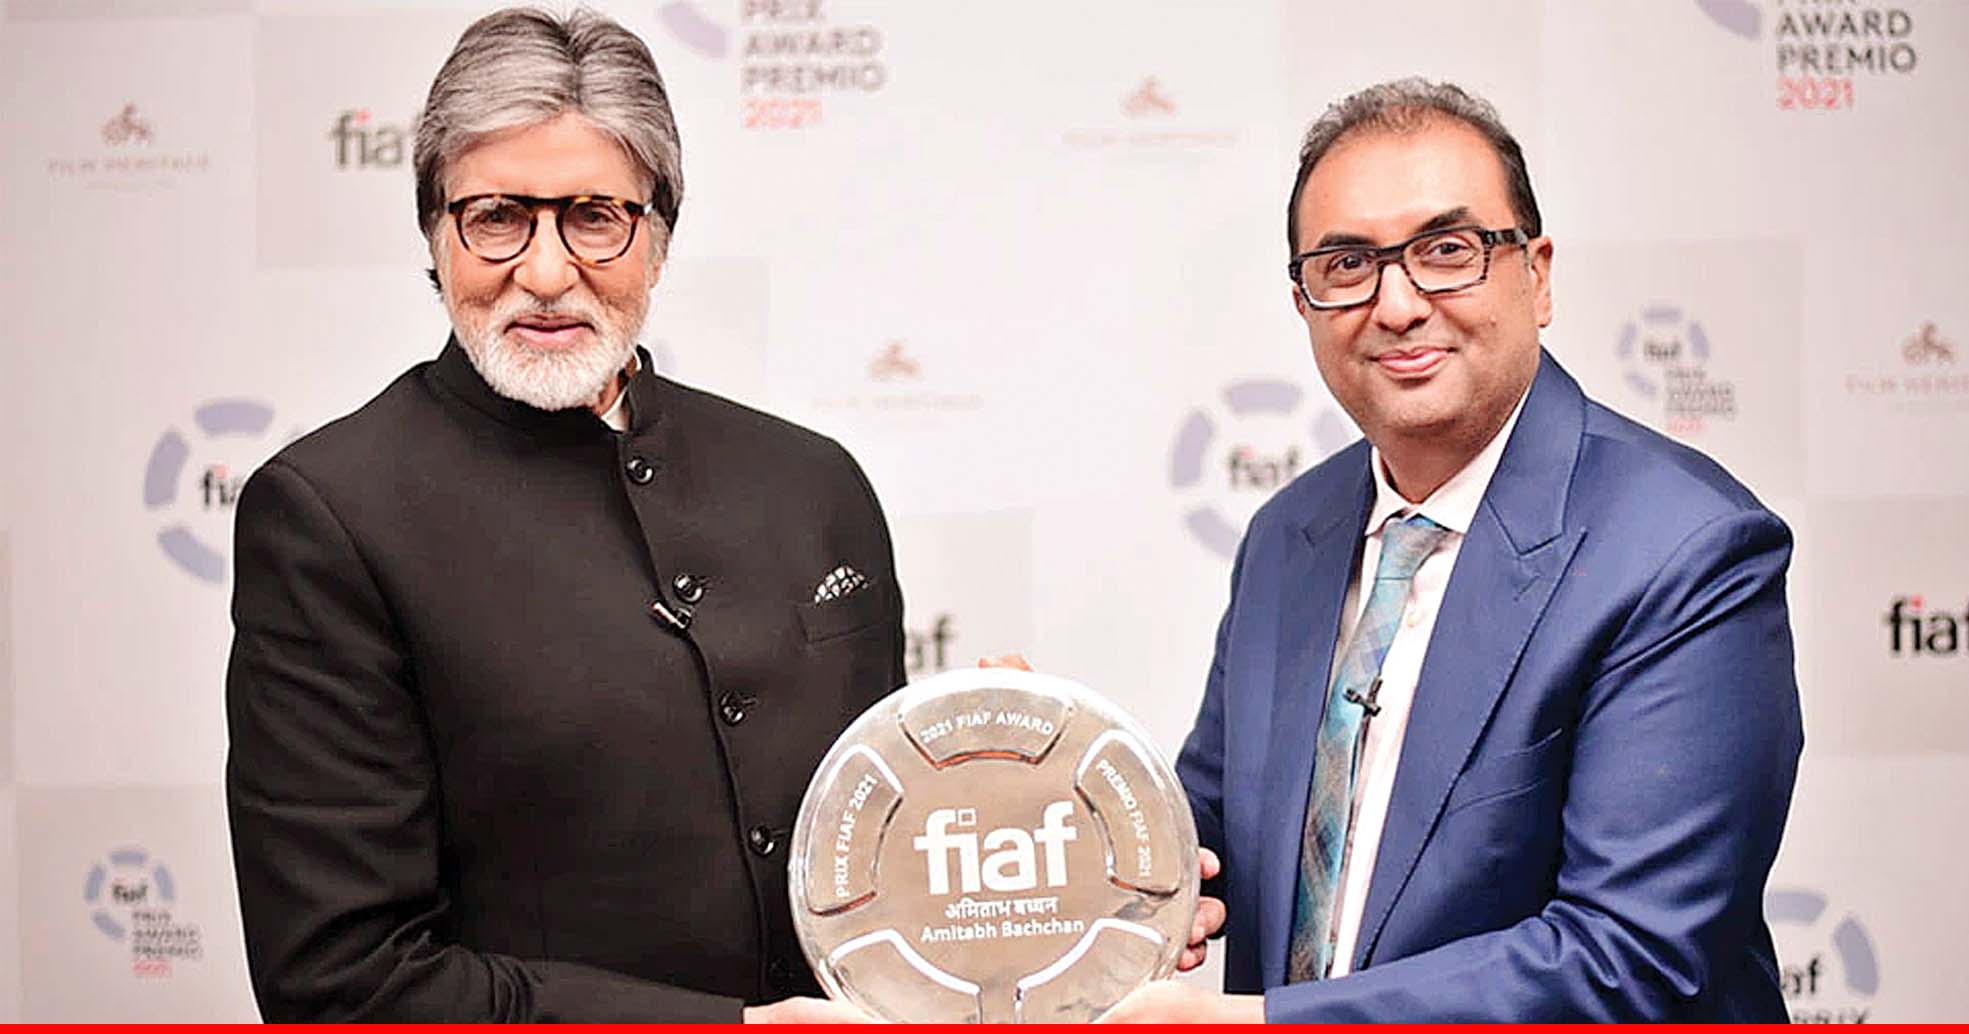 अमिताभ बच्चन बने FIAF अवॉर्ड पाने वाले पहले भारतीय